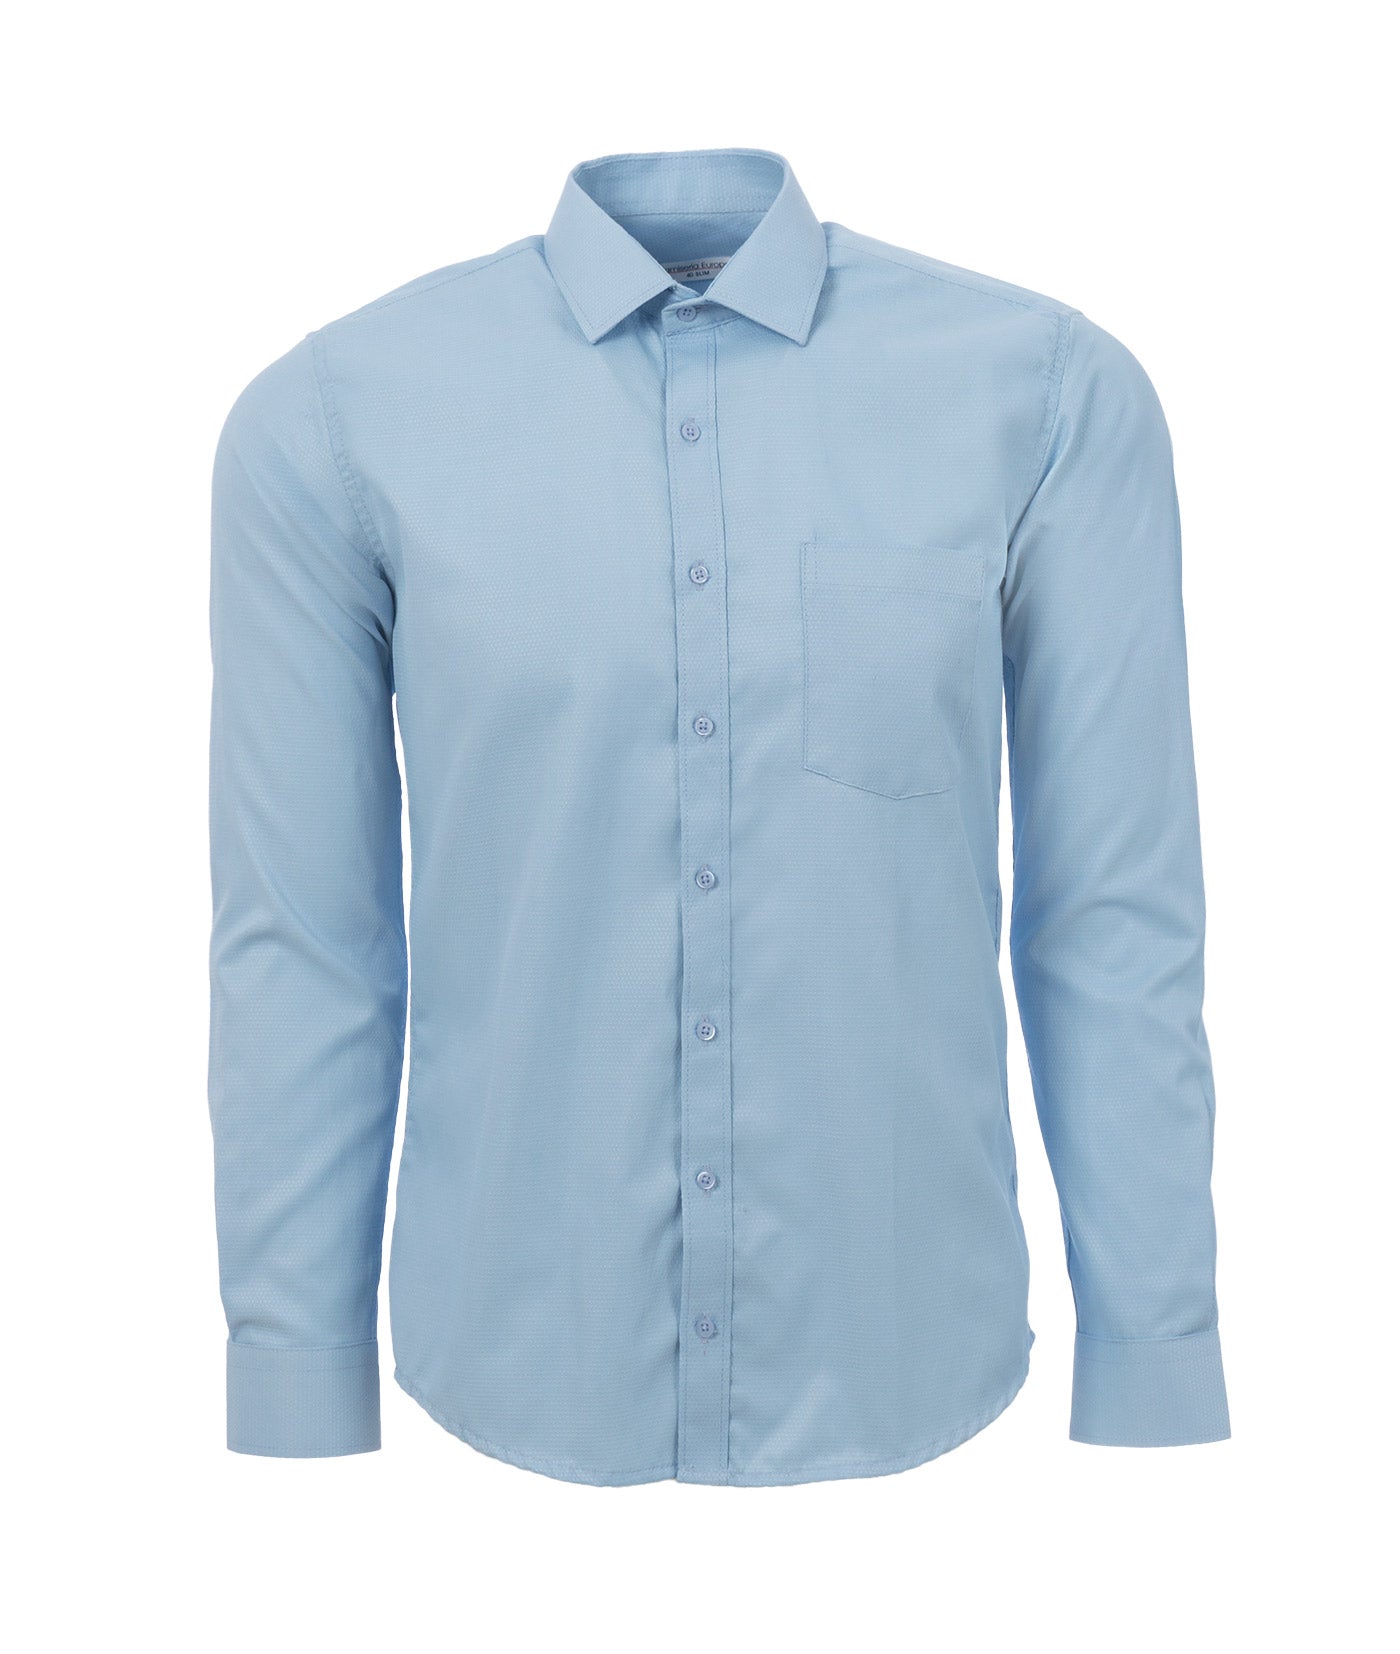 Closeup camiseta azul en blanco con espacio vacío para el suyo